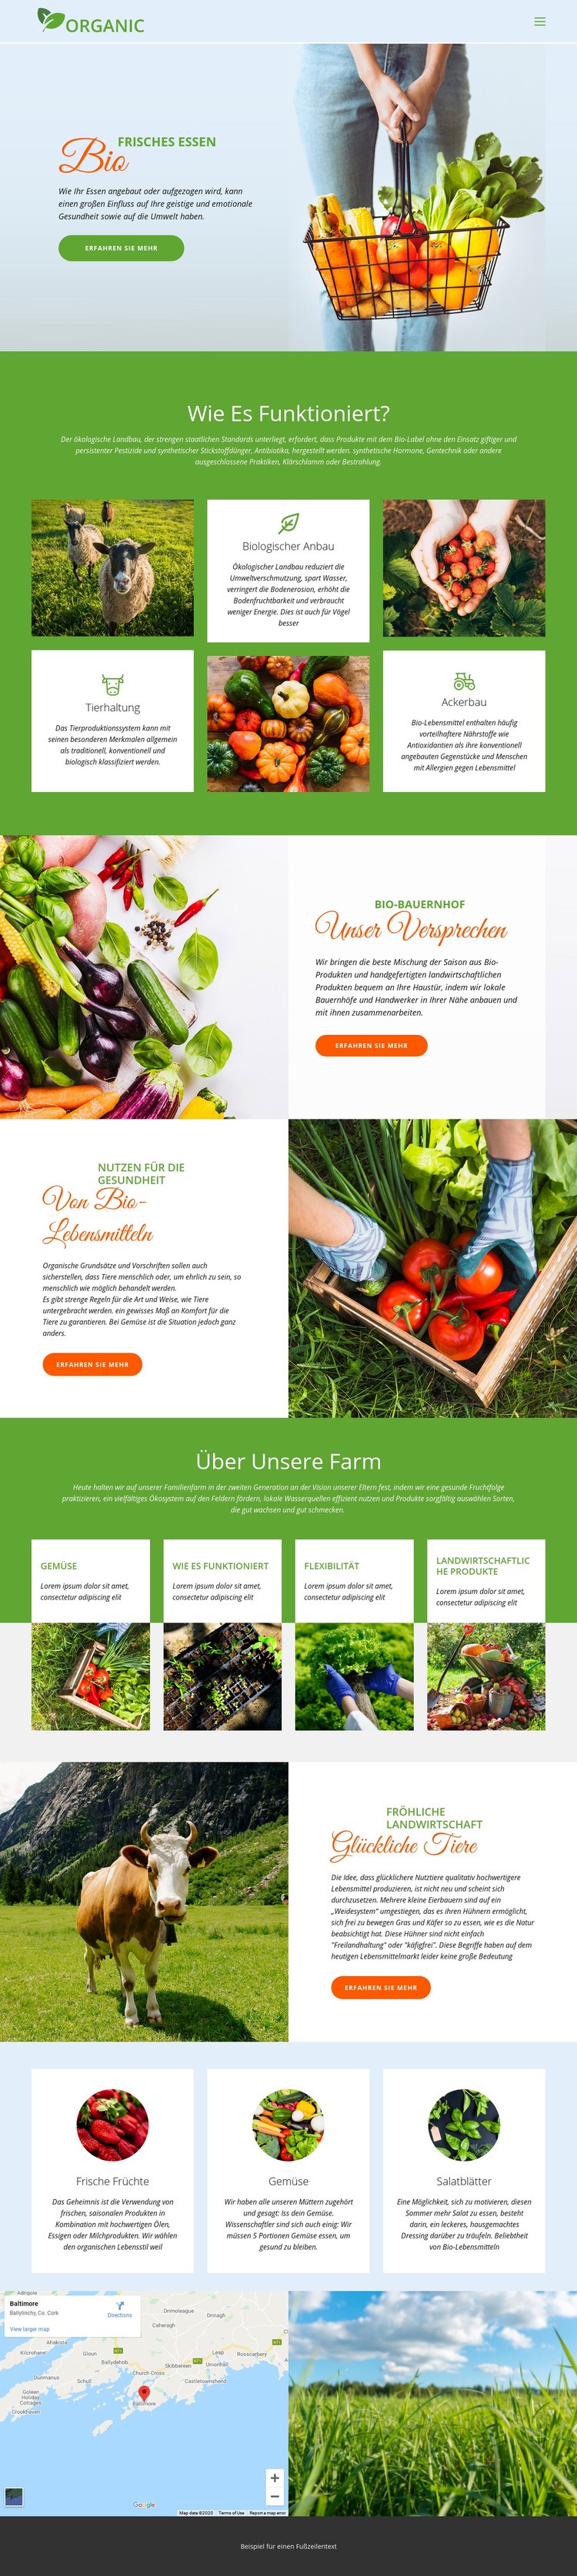 Essen Sie am besten Bio-Lebensmittel HTML Website Builder